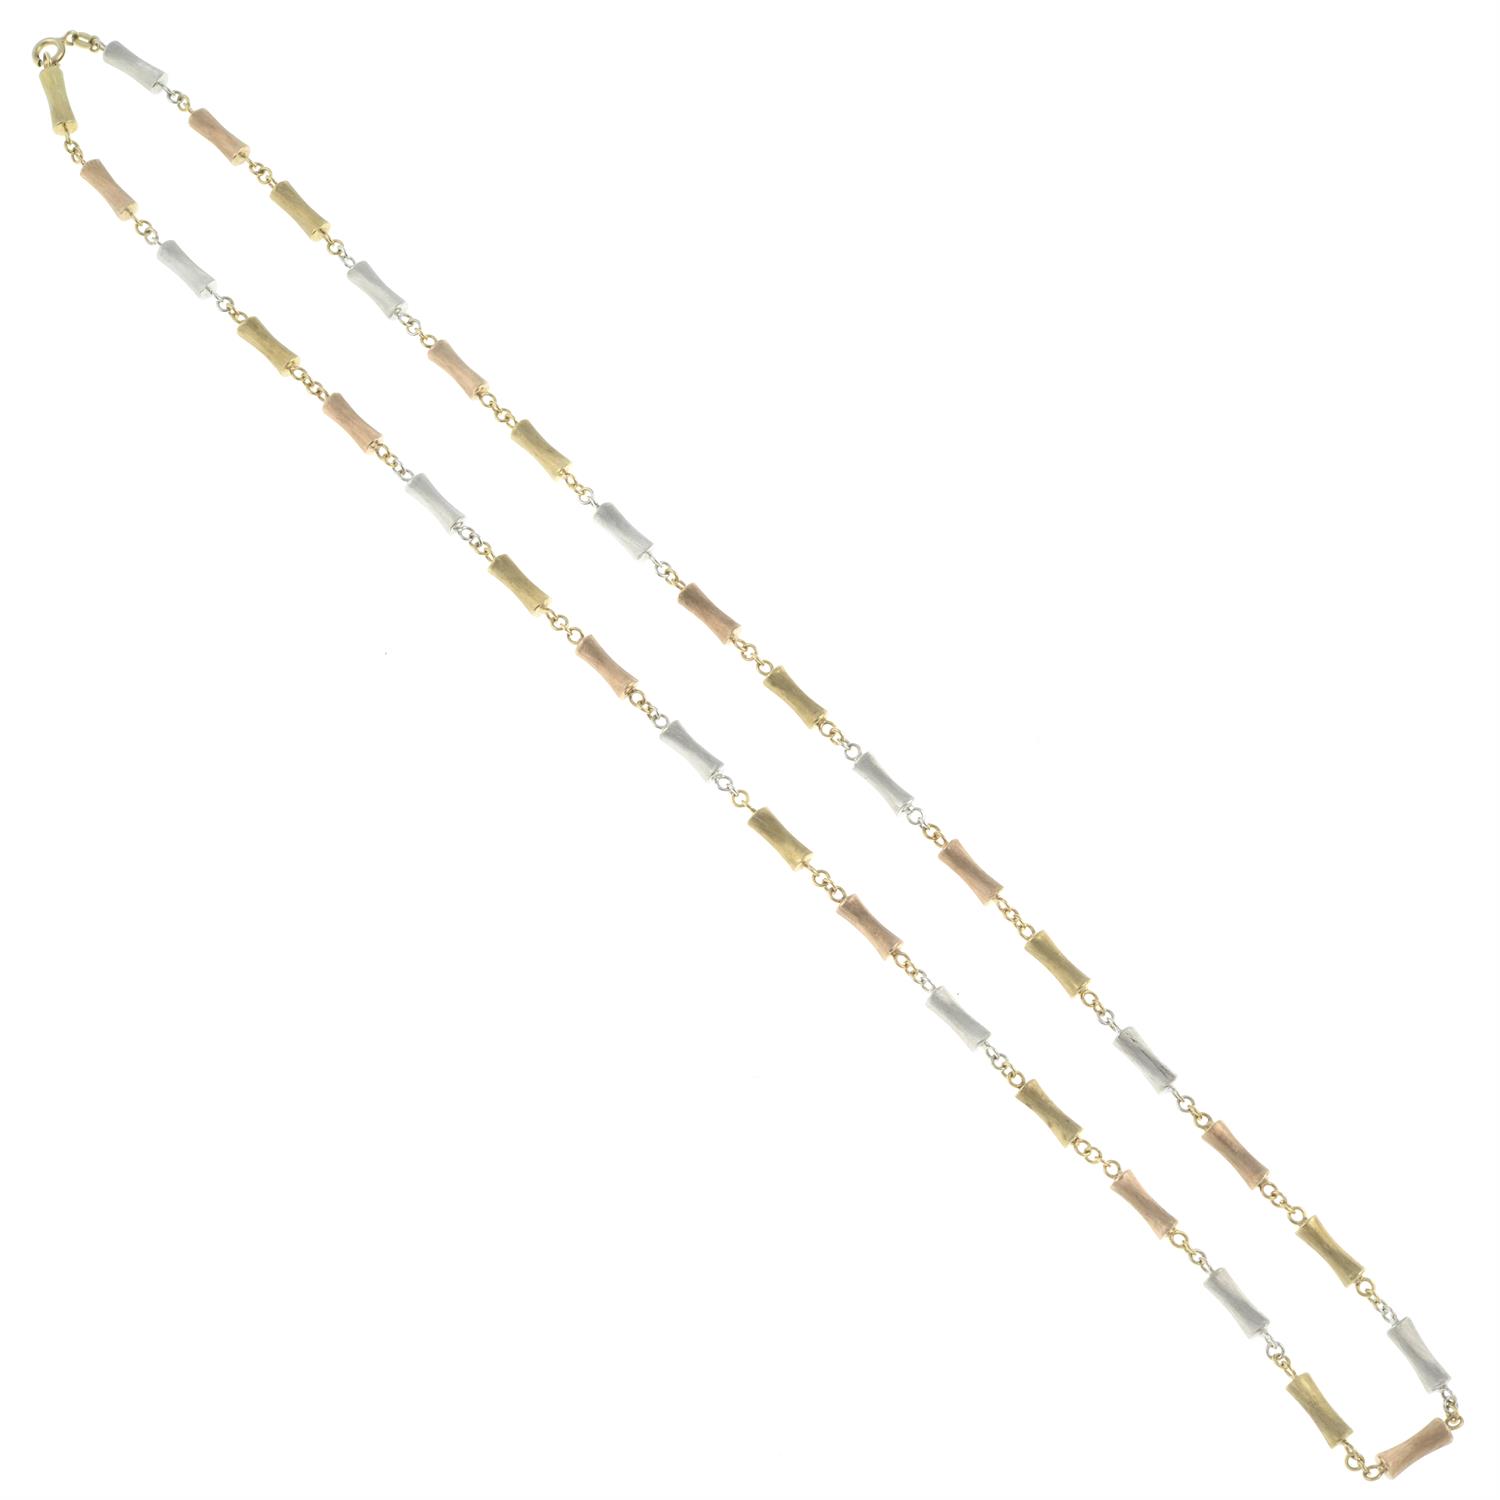 Tri-colour 9ct gold necklace